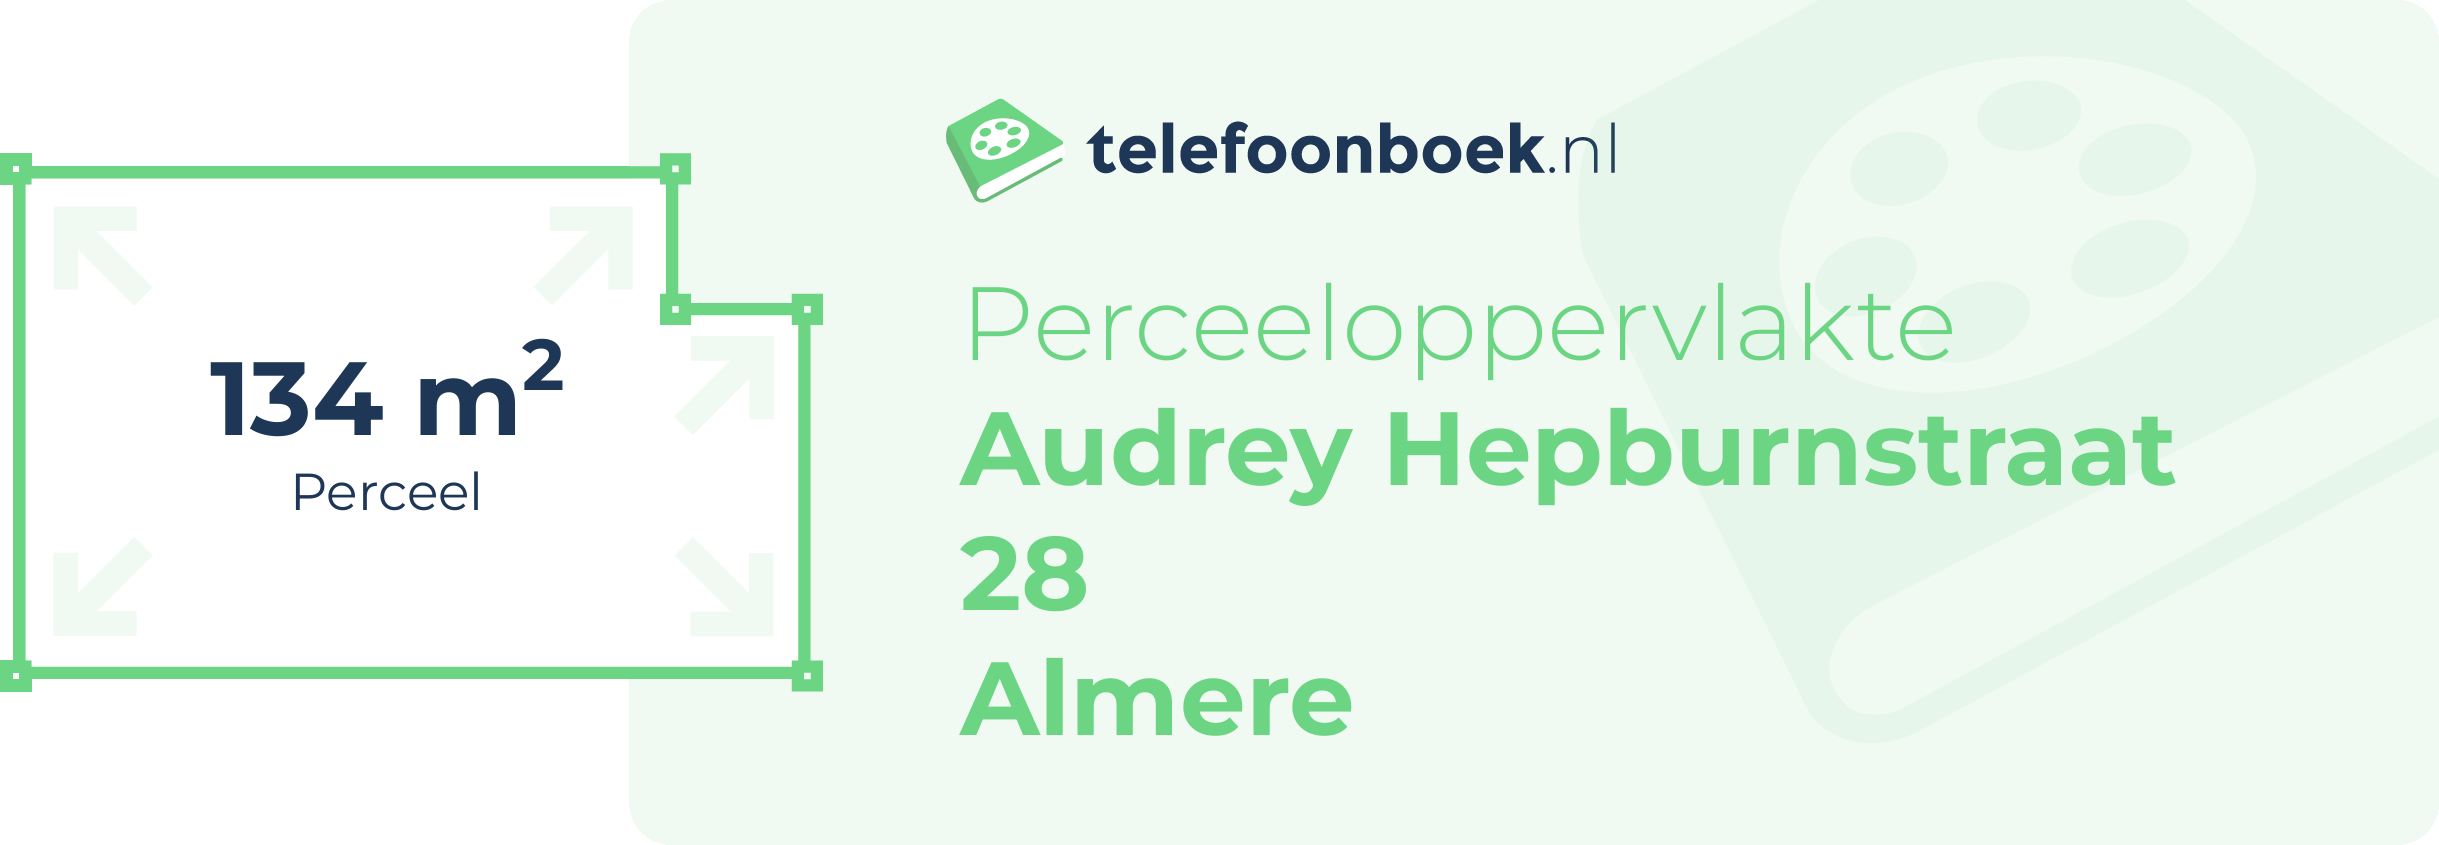 Perceeloppervlakte Audrey Hepburnstraat 28 Almere